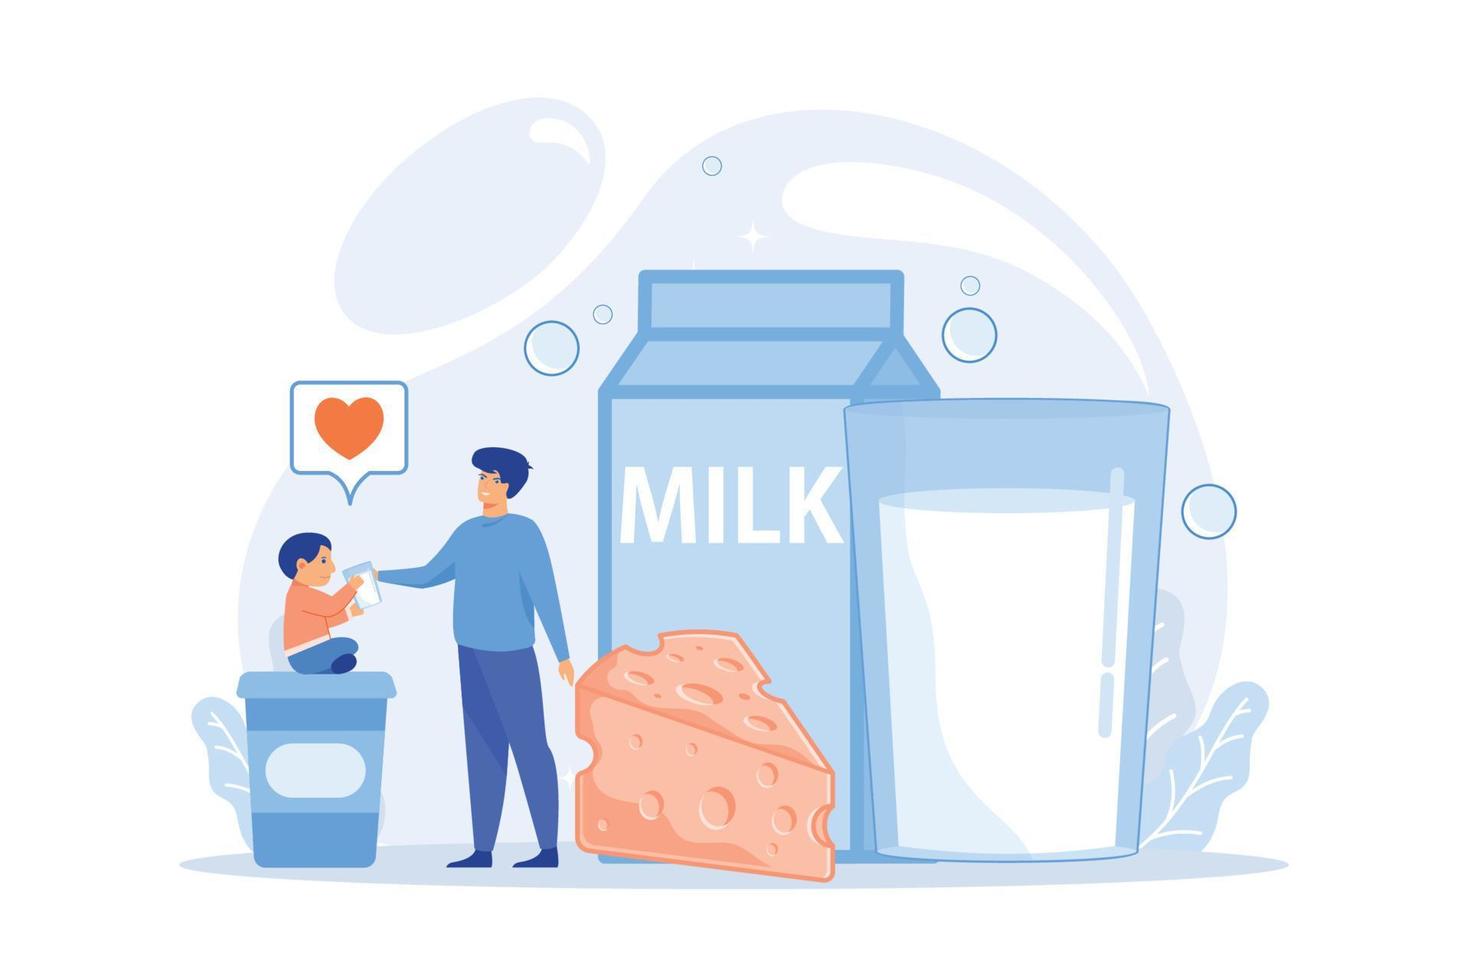 productos lácteos, queso, yogur y al niño le gusta beber leche, gente pequeña. productos lácteos, nutrición a base de leche, concepto de producción de productos lácteos. ilustración moderna de vector plano